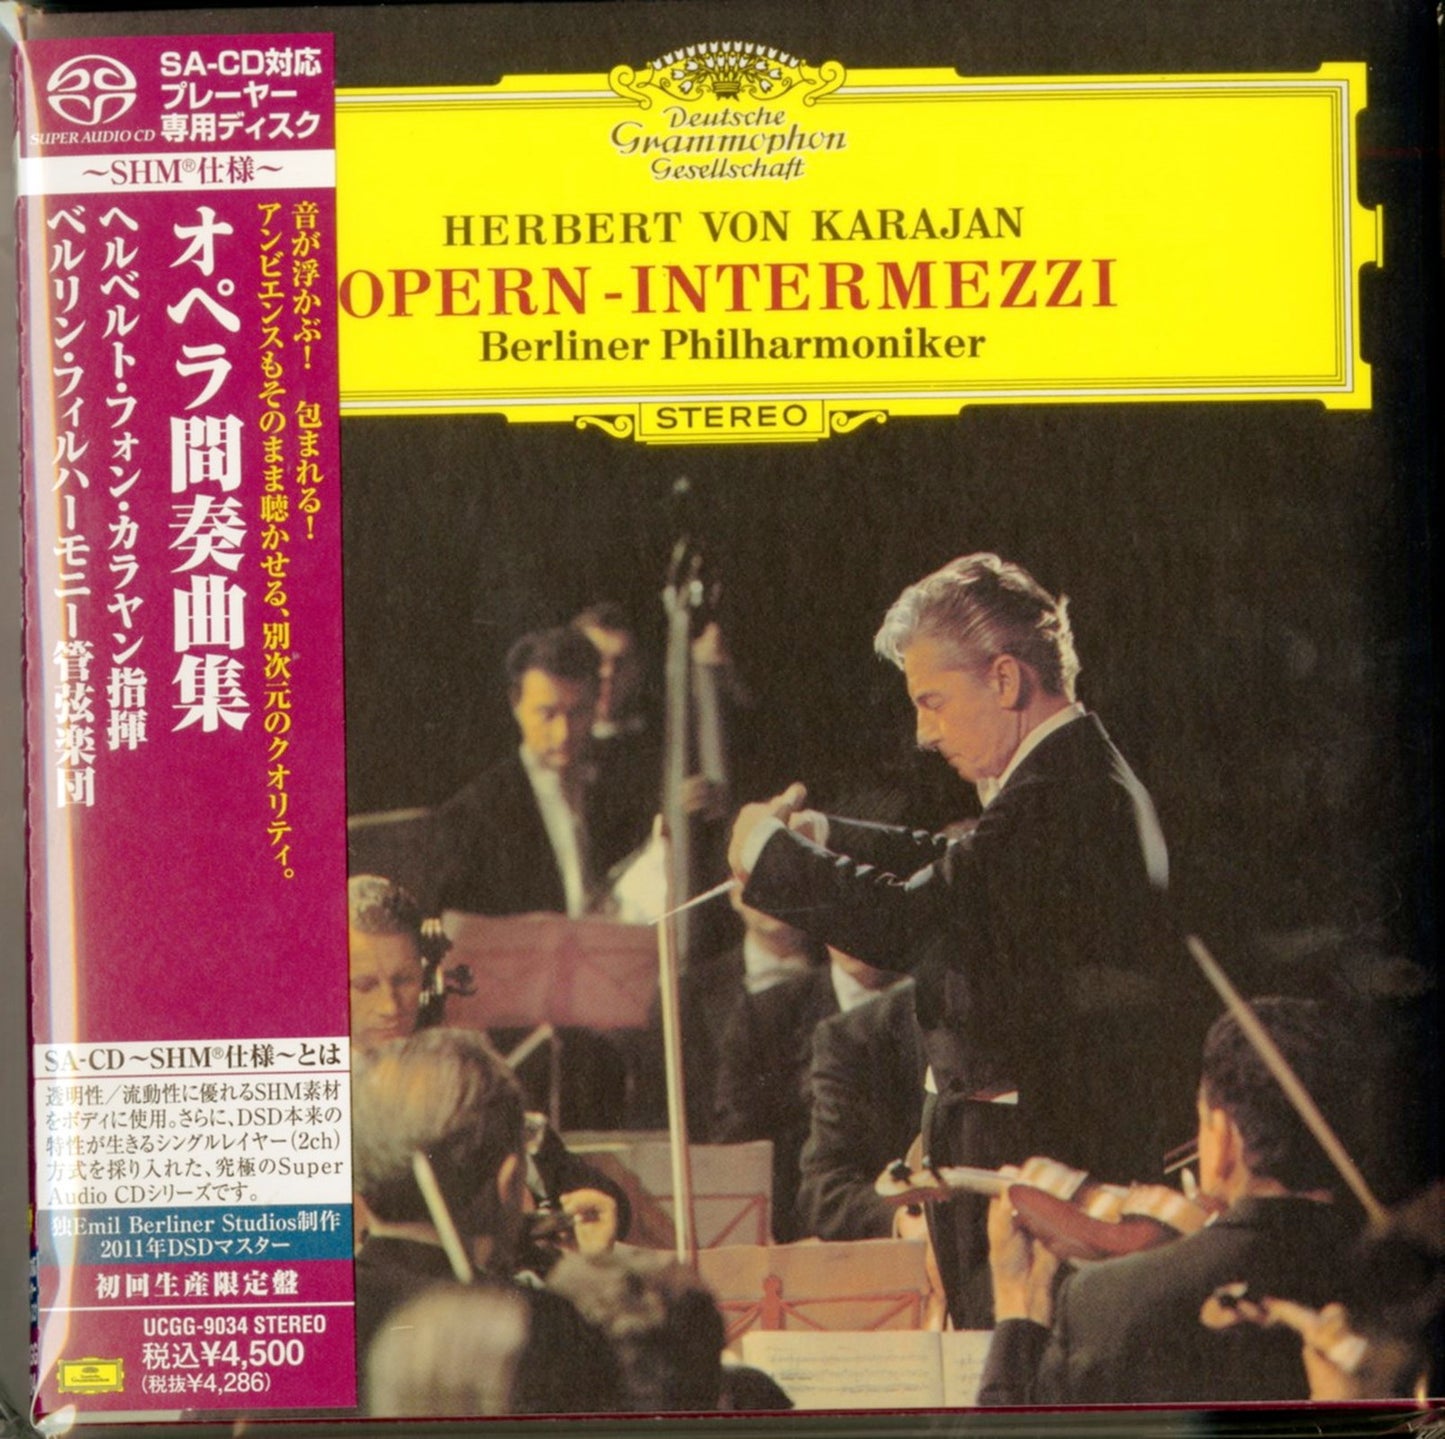 Herbert Von Karajan - Opern-Intermezzi - Mini LP SHM-SACD Limited Edition